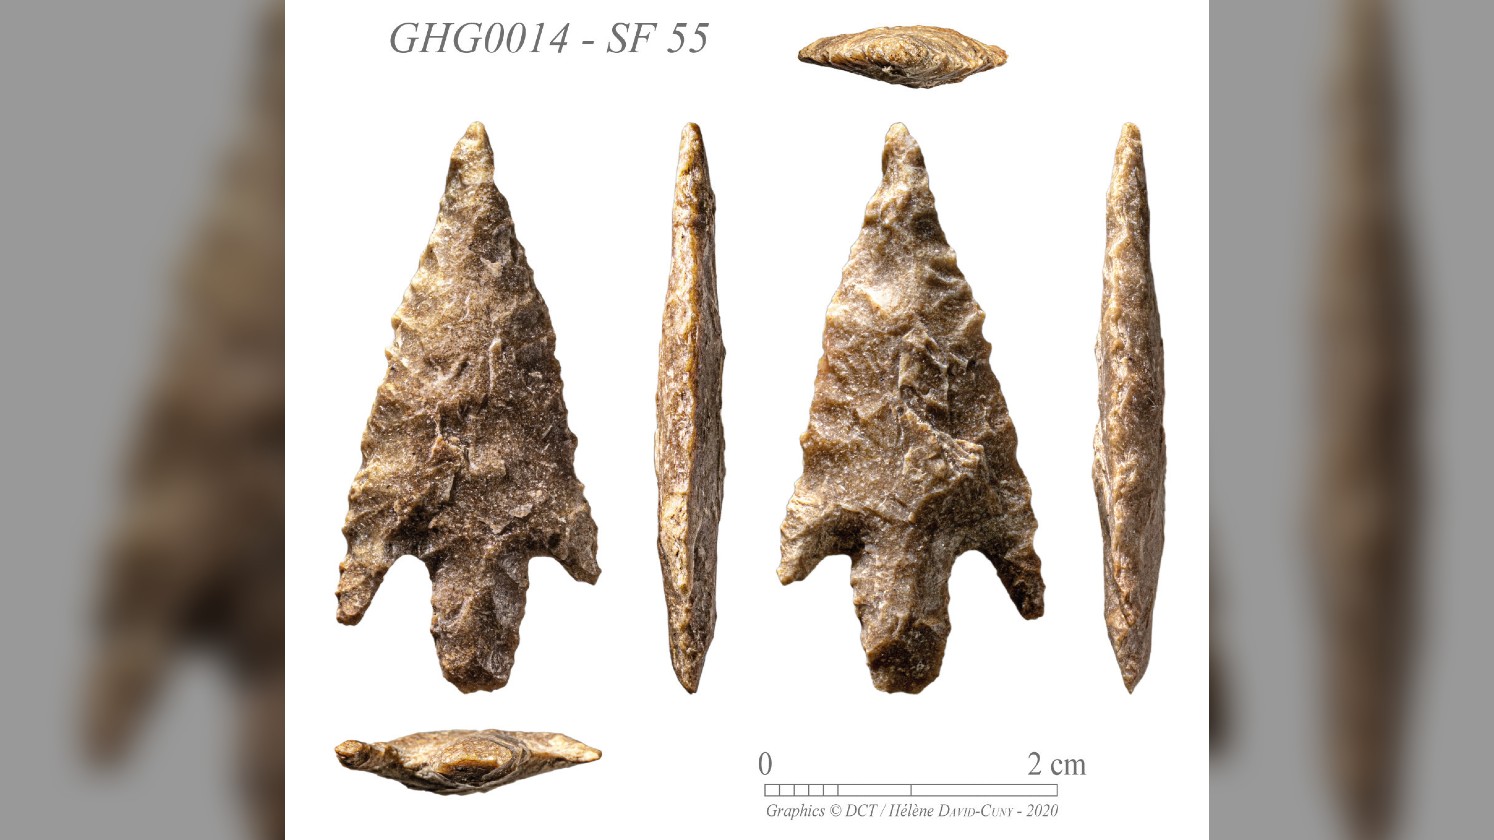 The stone arrowheads found on Ghagha